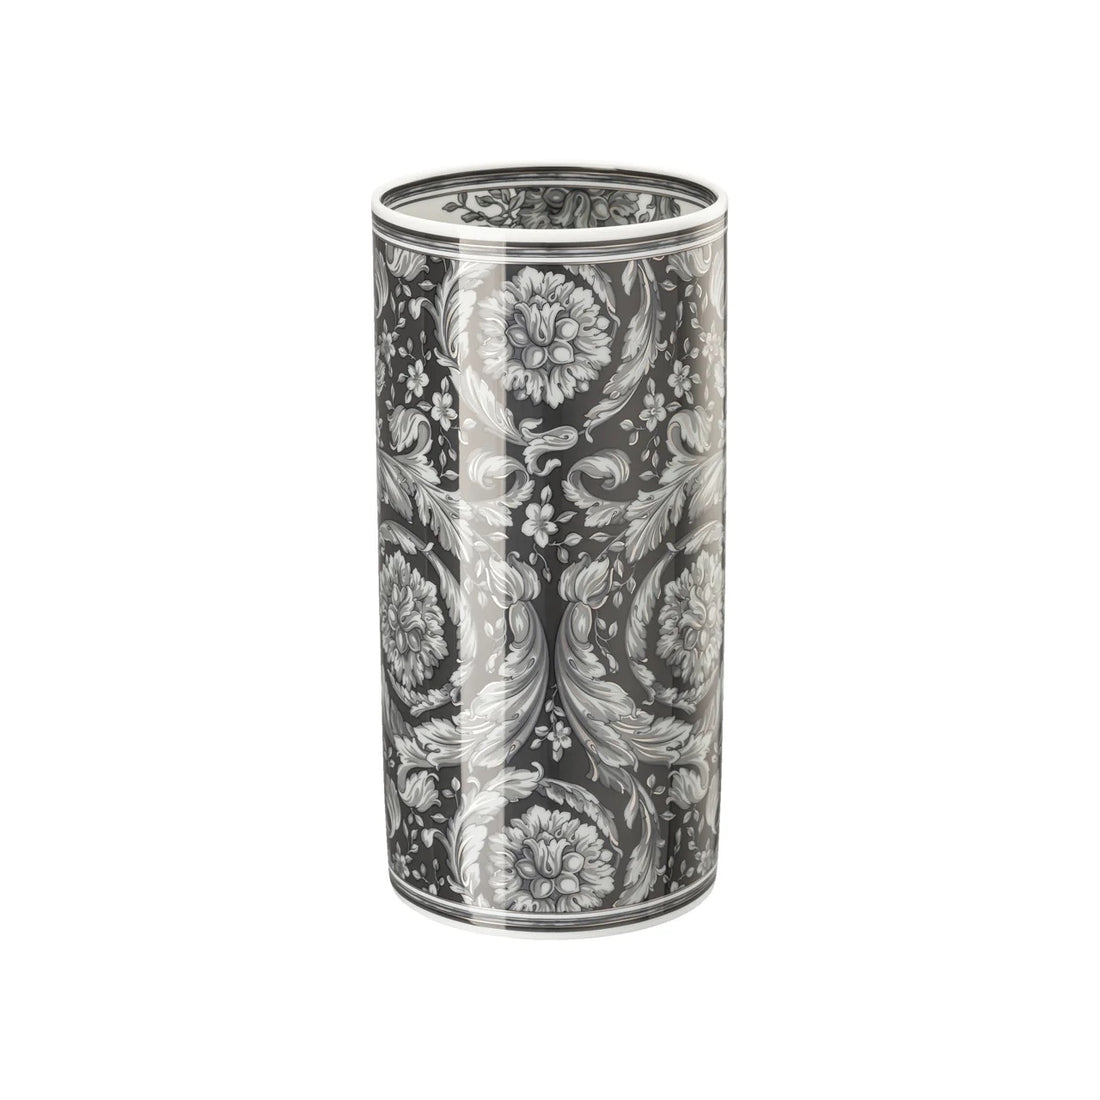 VERSACE - Barocco Haze Vaso da Fiori 24cm Nero Porcellana